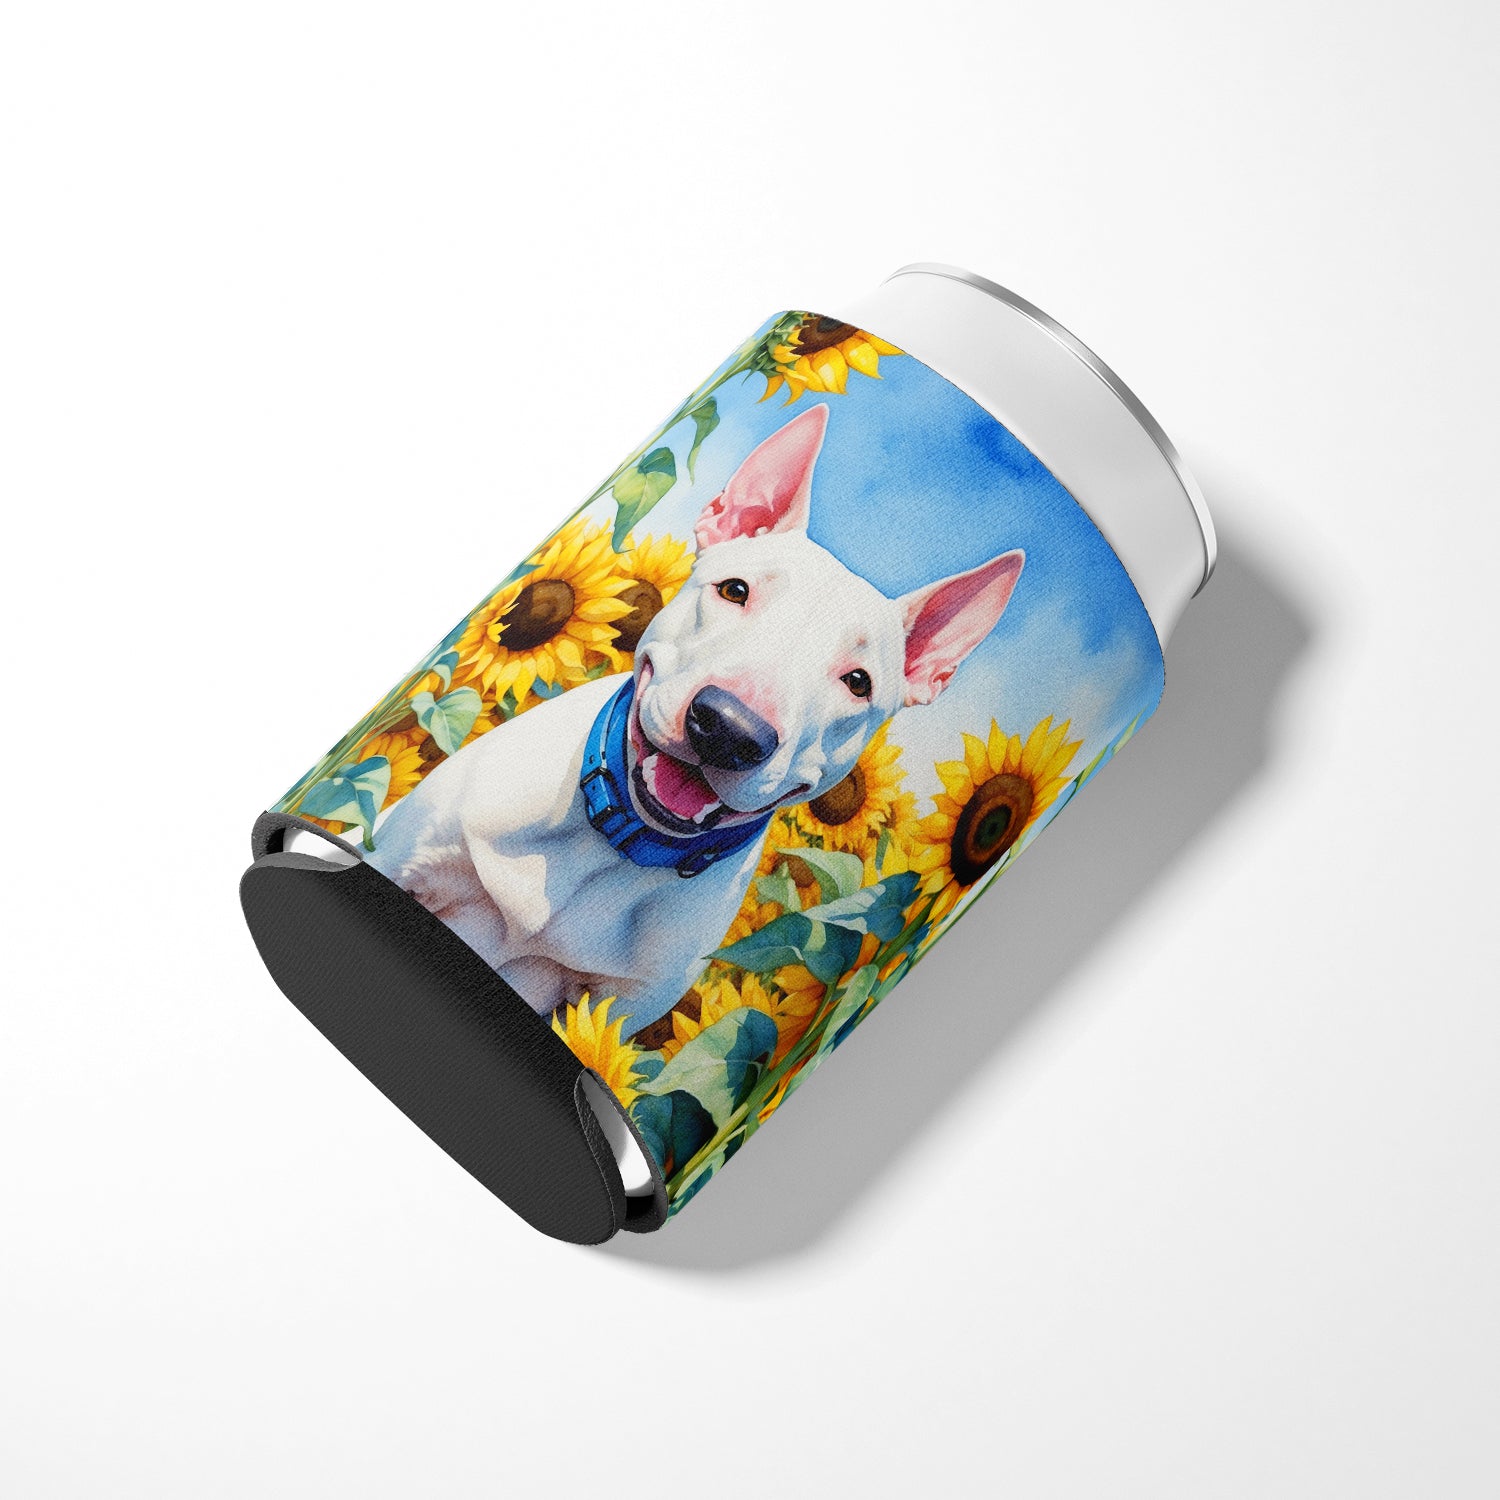 English Bull Terrier in Sunflowers Can or Bottle Hugger